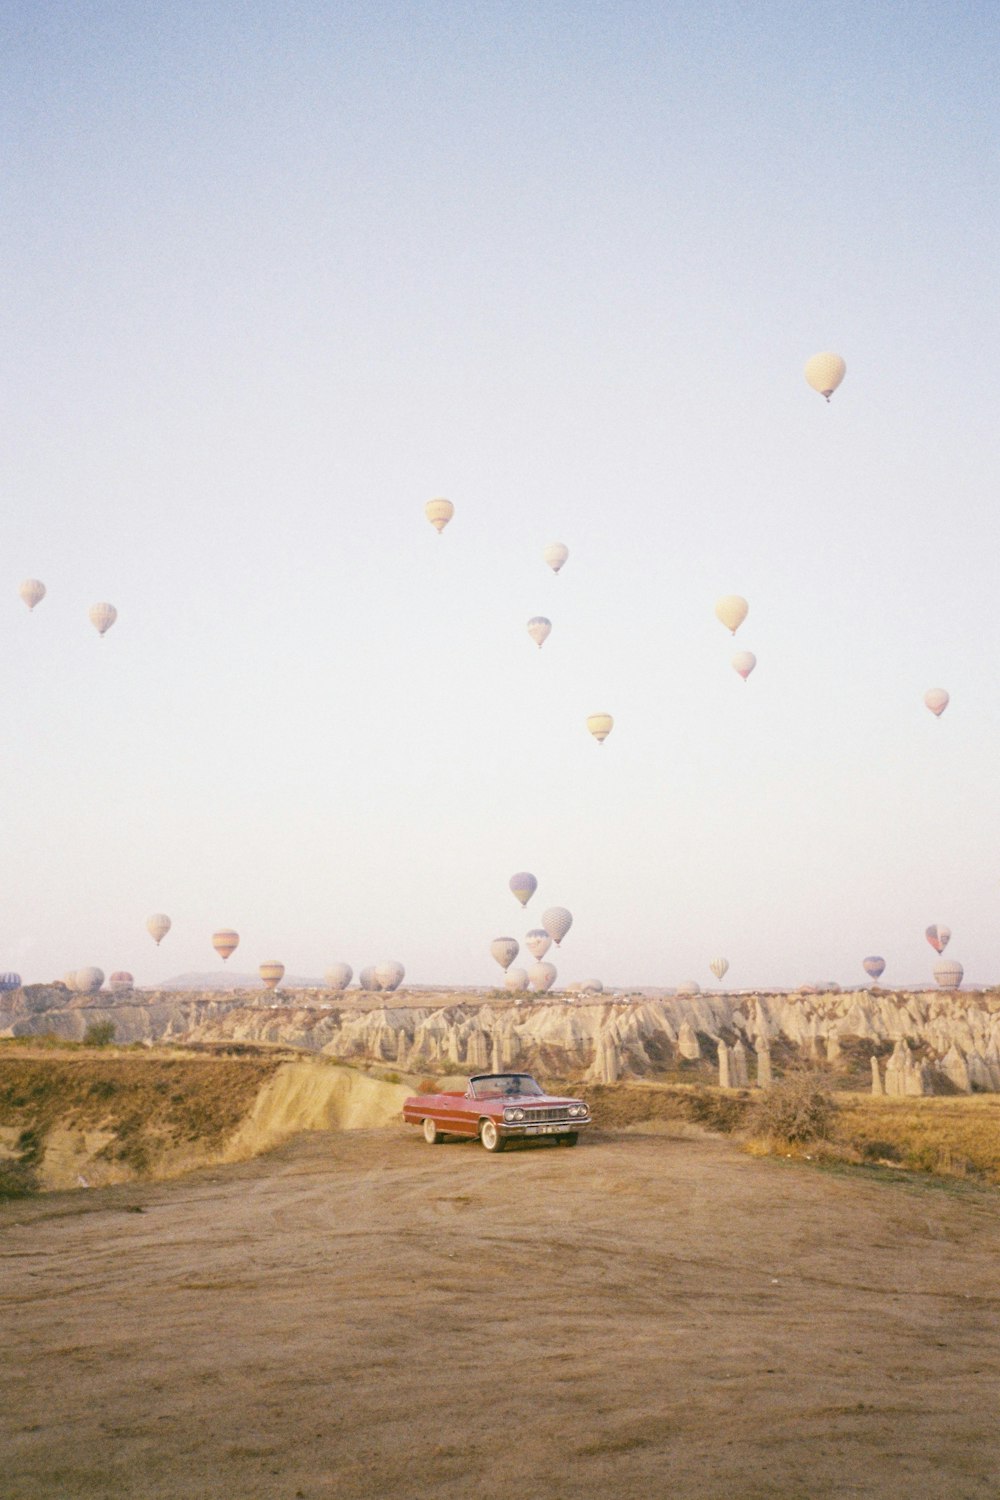 um carro dirigindo através de um campo de balões de ar quente